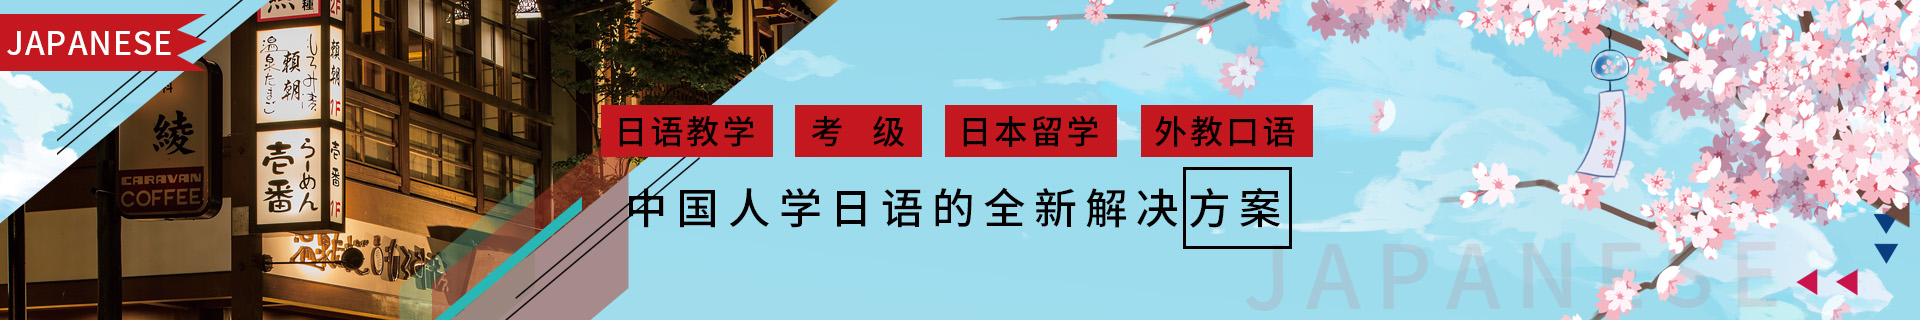 广州天河樱花国际日语培训机构